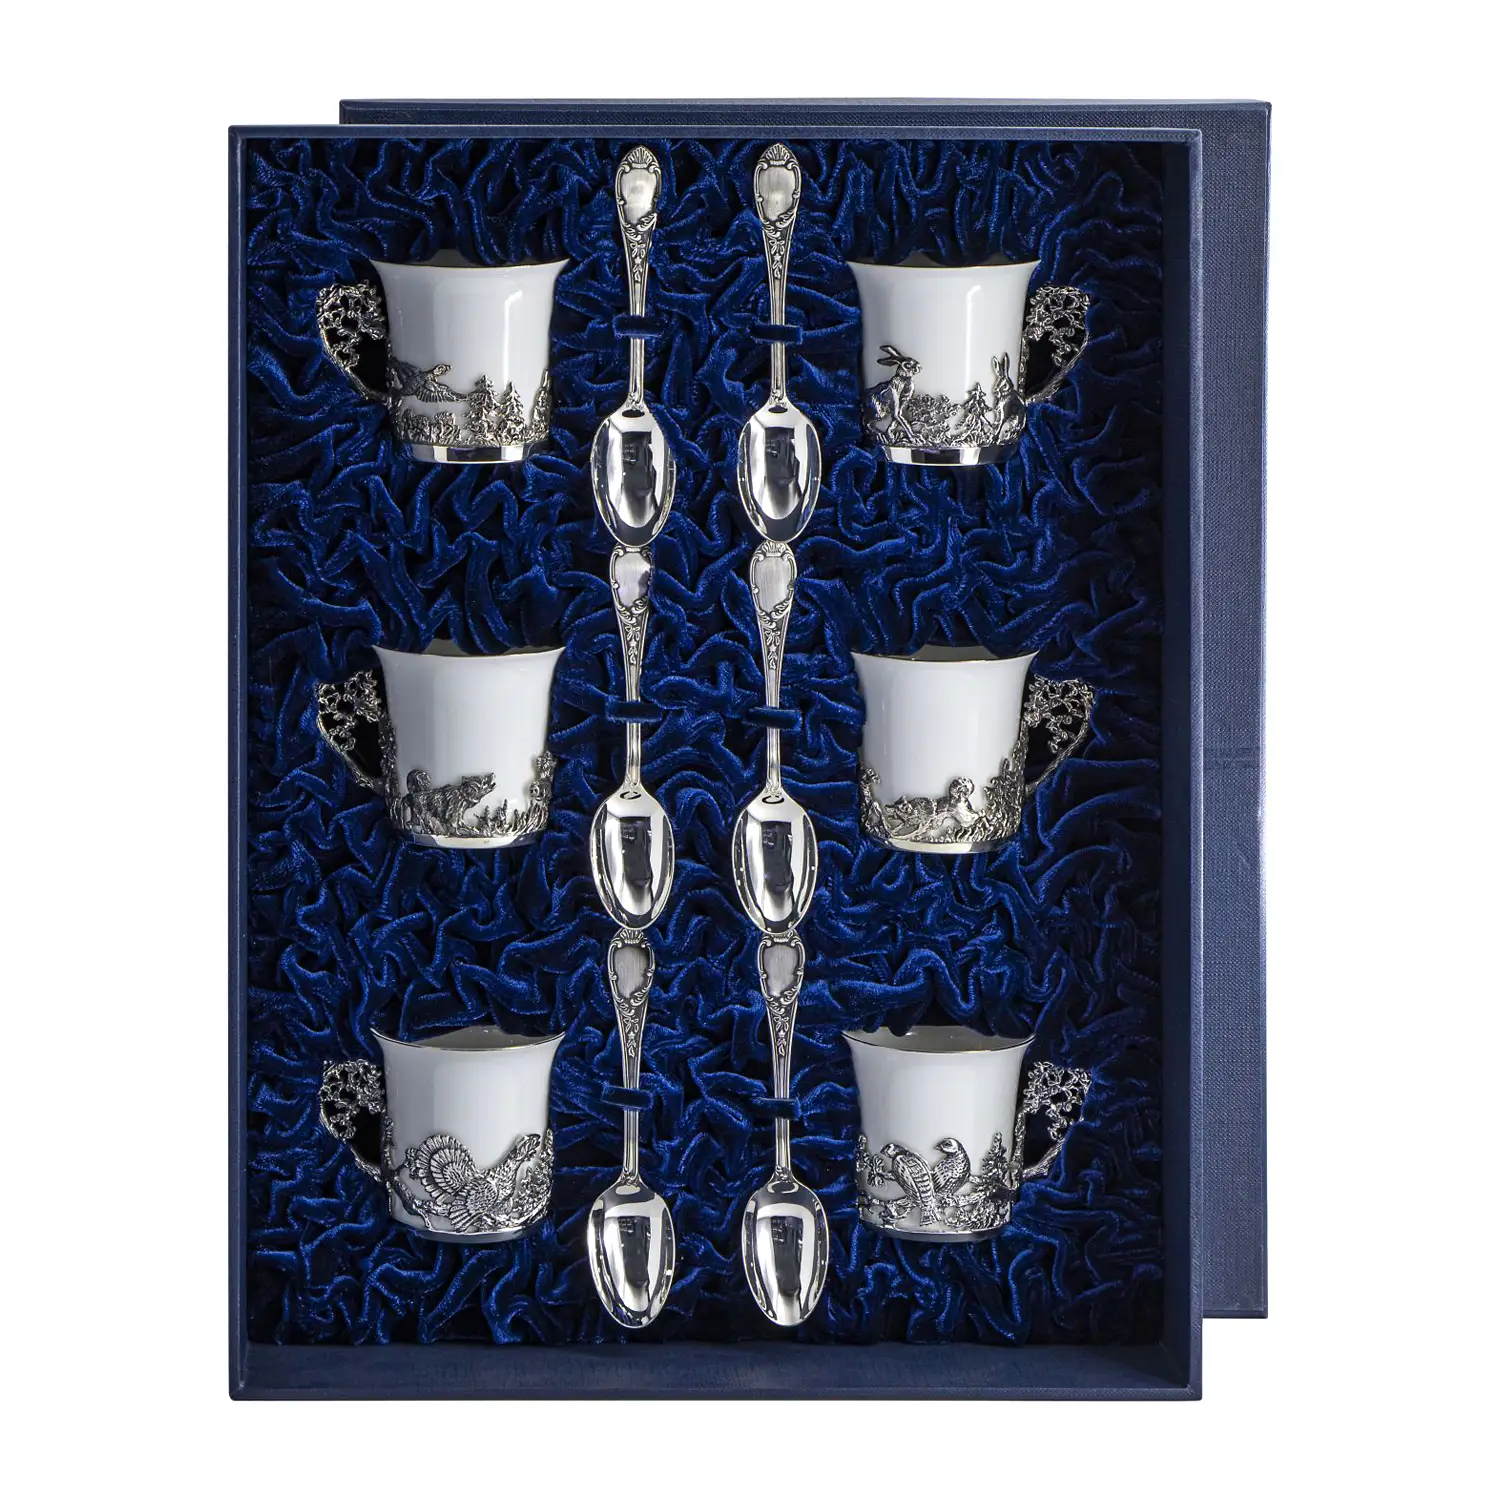 Набор кофейных чашек Охотничьи: ложка, чашка (Серебро 925) набор кофейных чашек август октавиан ложка чашка серебро 925